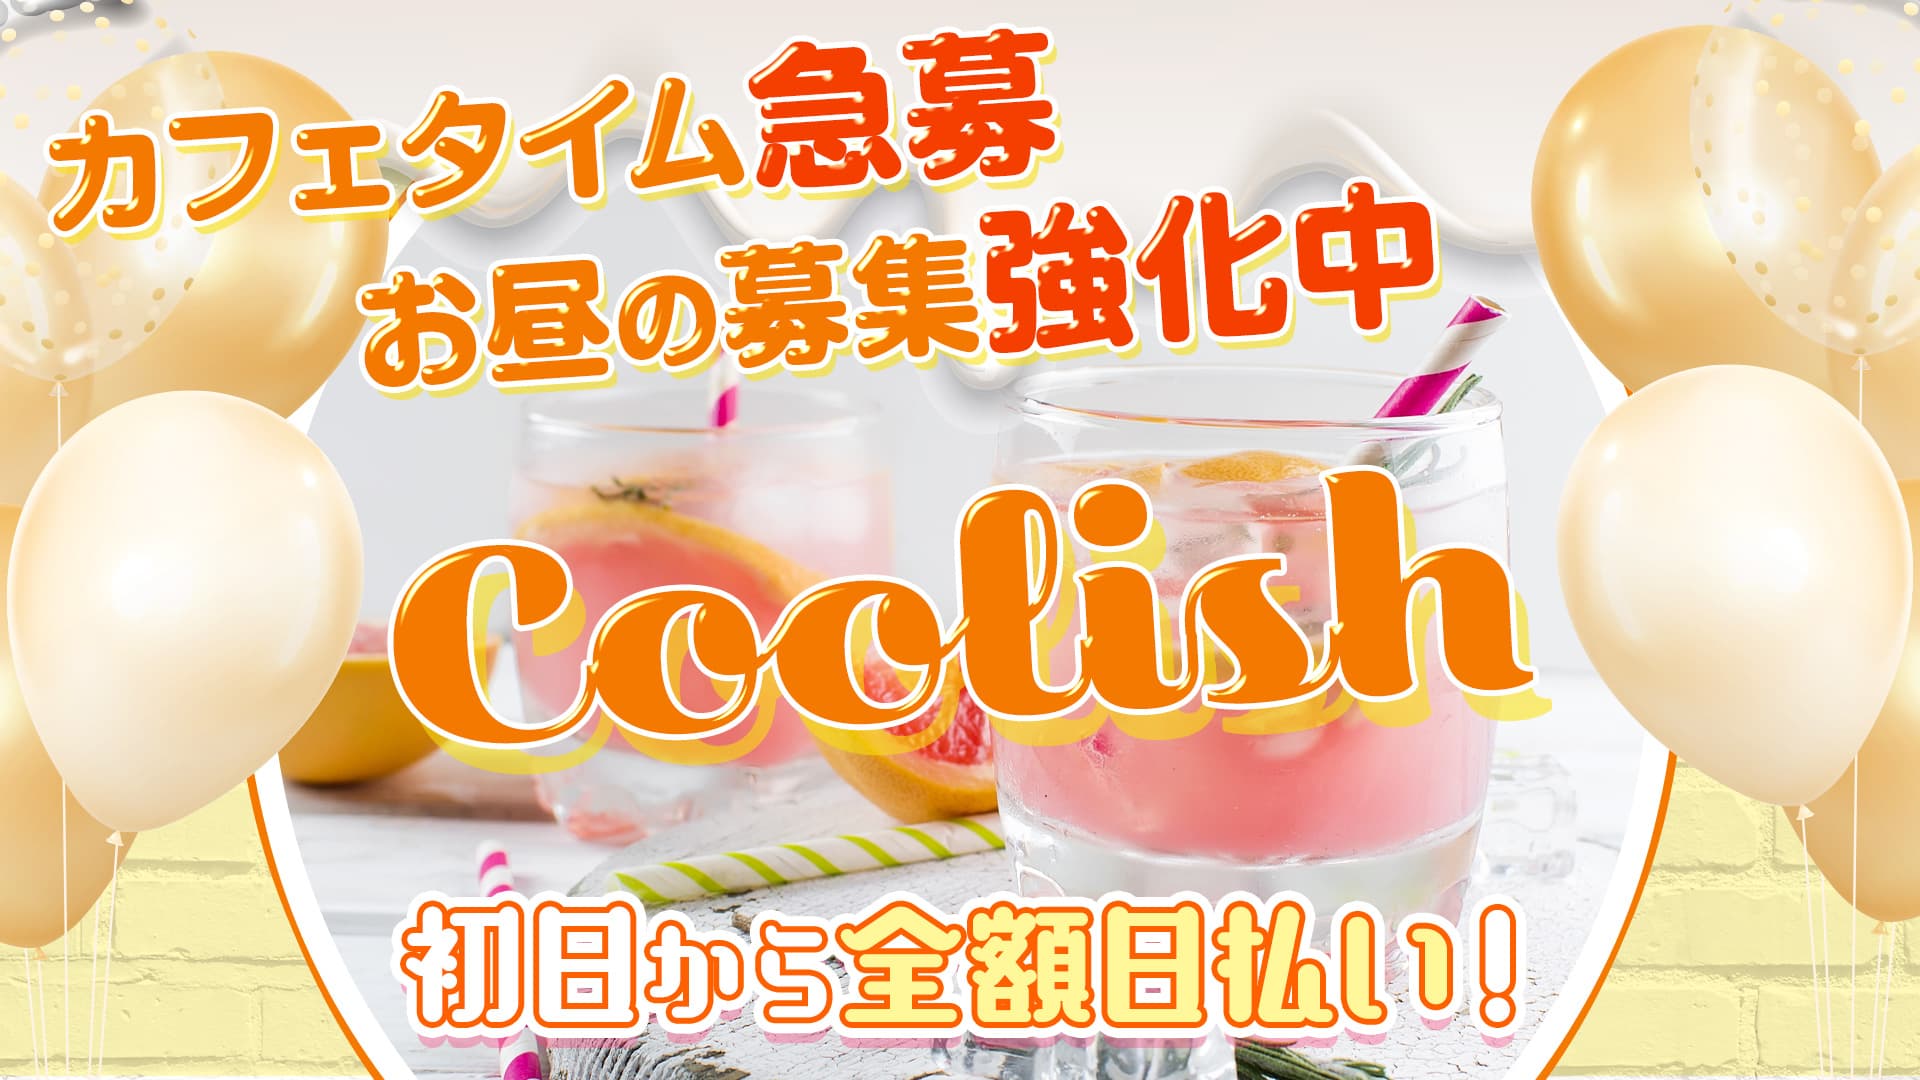 【朝・昼・夜】Coolish（クーリッシュ）【公式体入・求人情報】 関内ガールズバー TOP画像